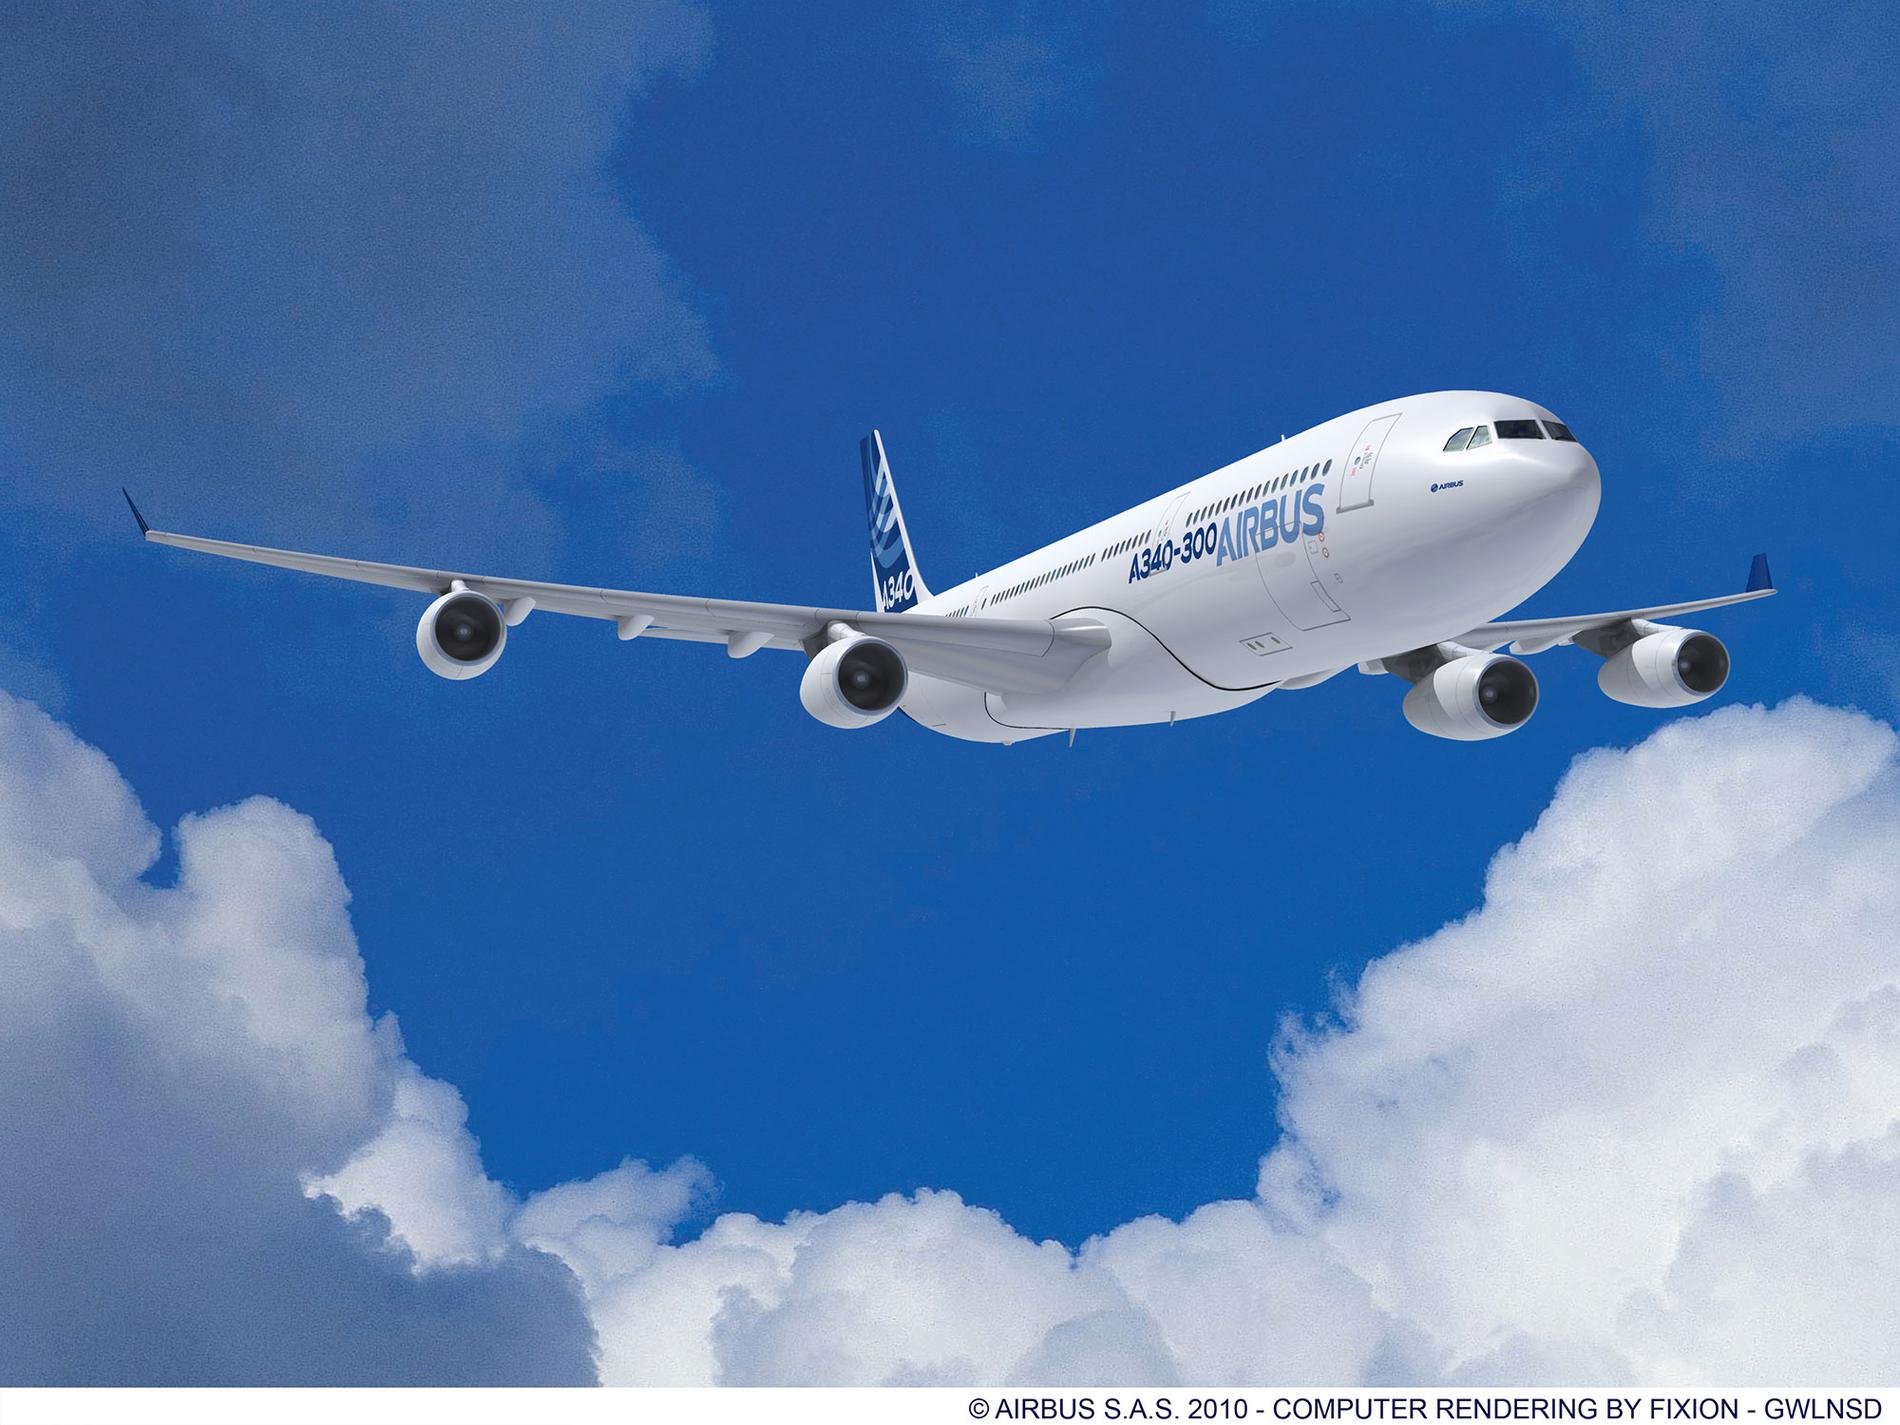 Airbus A340-300 tillverkas inte längre men används av bland annat SAS och Finnair.